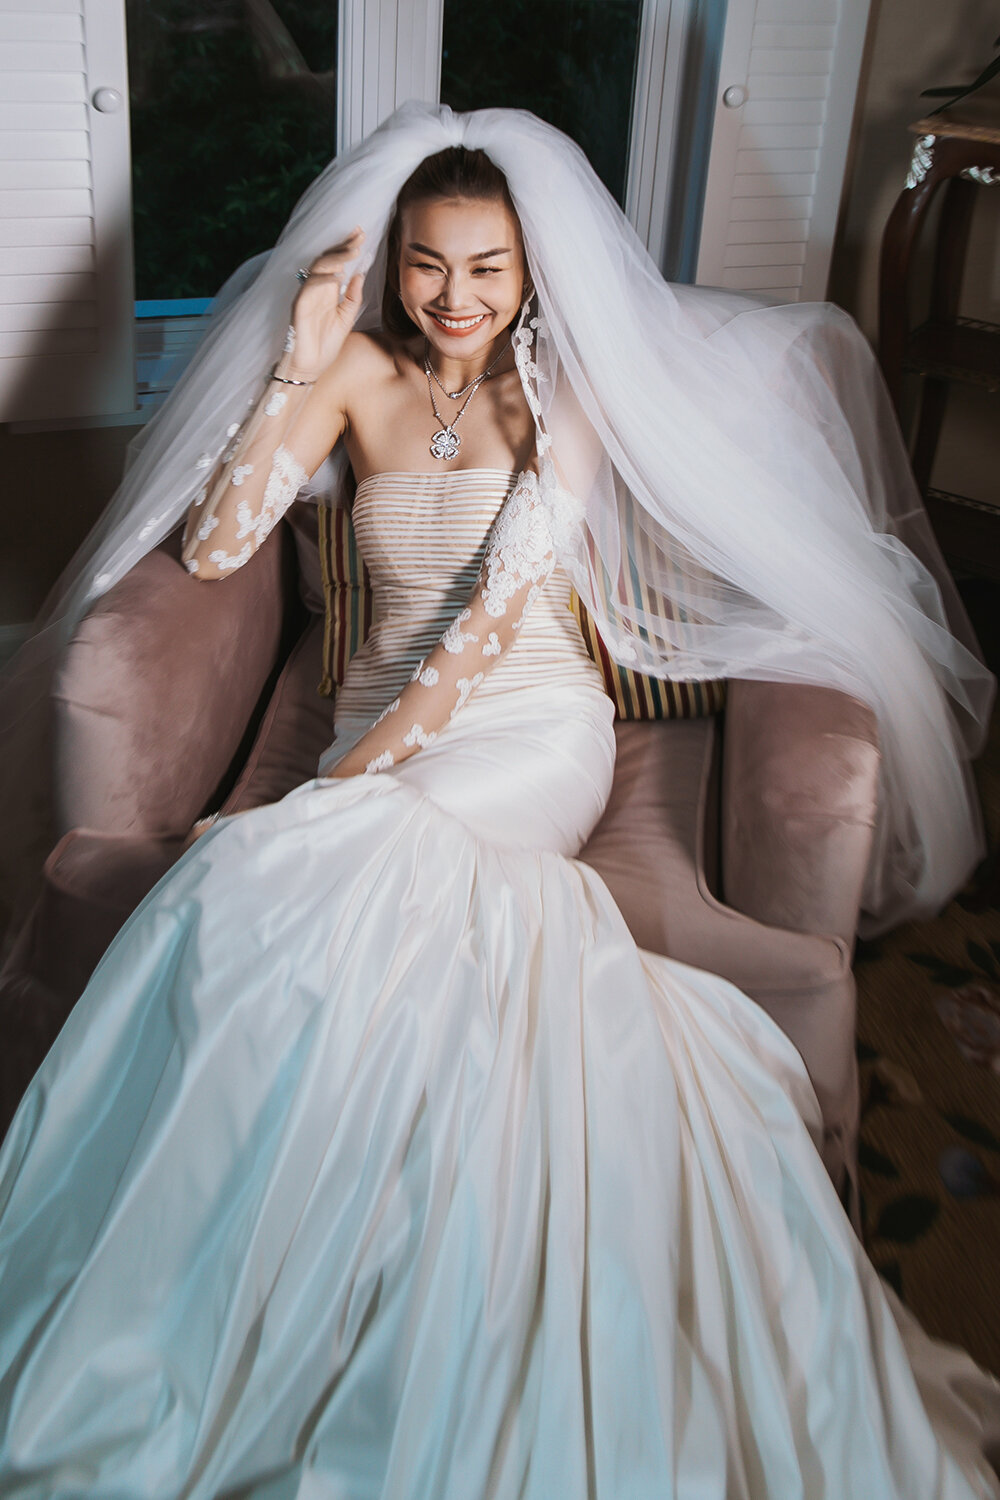  Thanh Hằng đeo trang sức 10 tỷ đồng trong đám cưới với chồng nhạc trưởng - 14